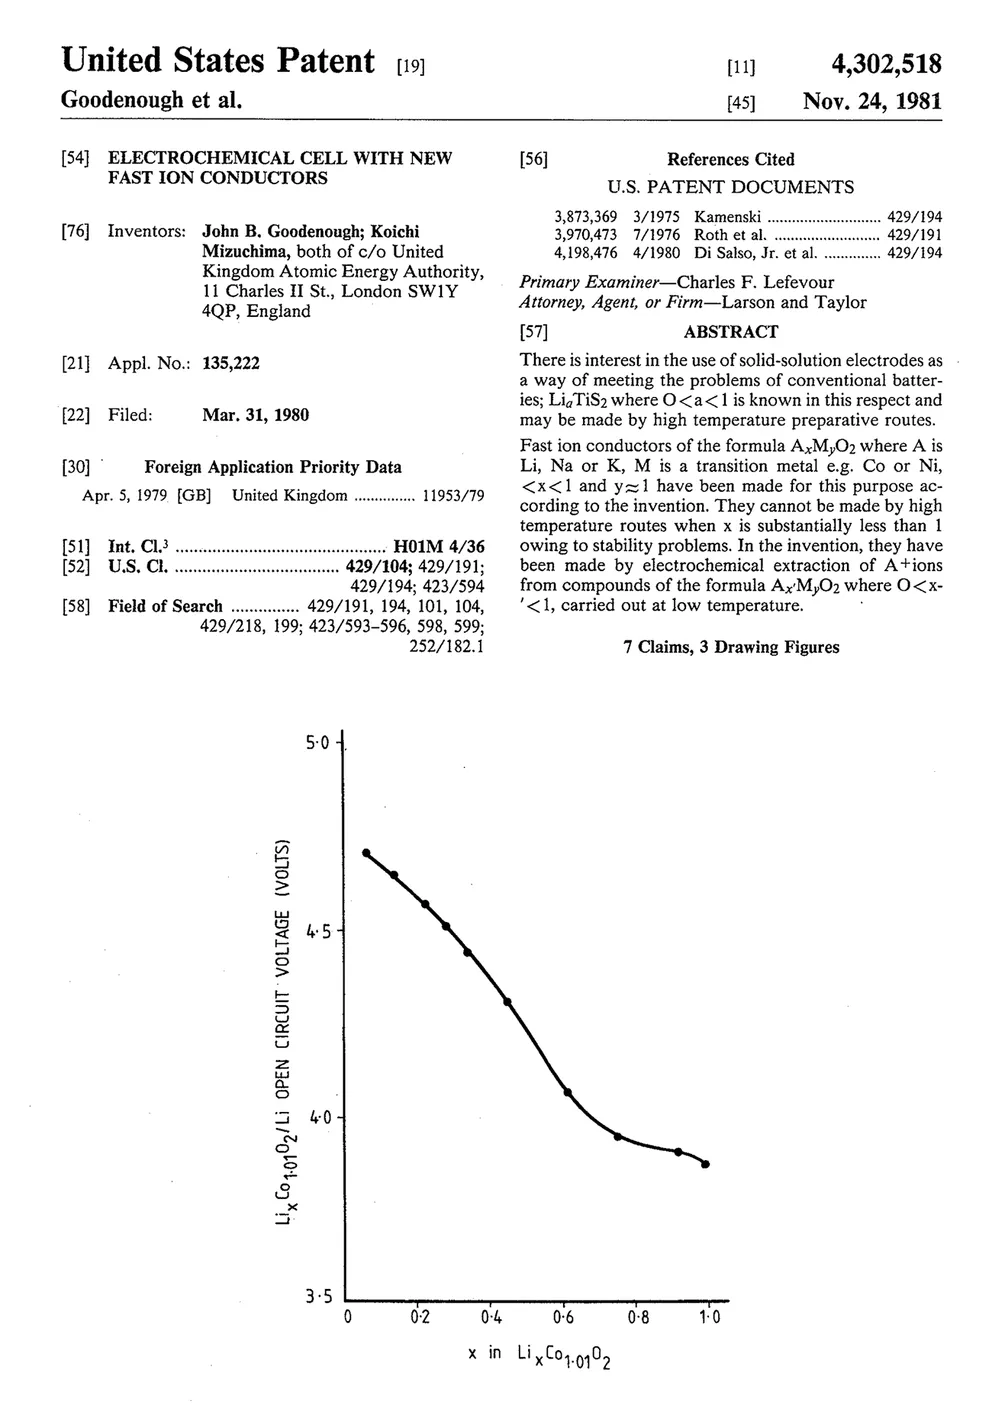 Джон Гуденаф и его соавтор Коичи Мизушима убедили Atomic Energy Research Establishment профинансировать расходы на патентование их литий-кобальтового аккумулятора, но для этого им пришлось отказаться от финансовых прав на него.